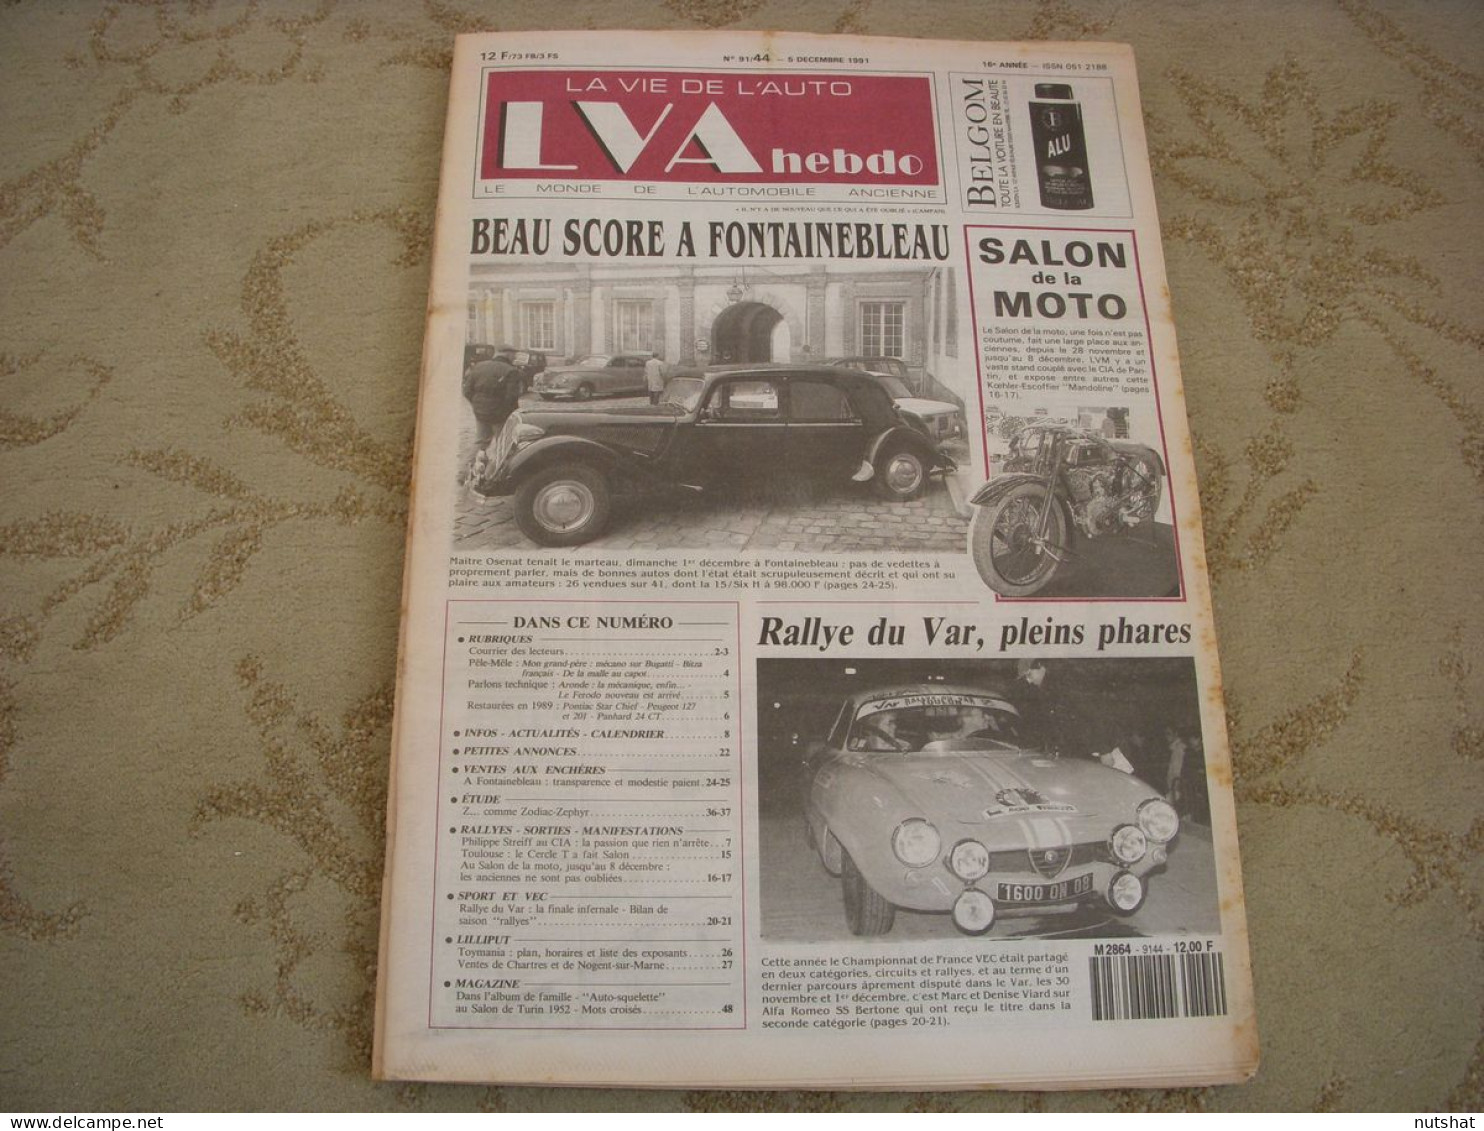 LVA VIE De L'AUTO 91/44 12.1991 ZODIAC-ZEPHYR TOYMANIA SALON MOTO Et AUTO - Auto/Motor